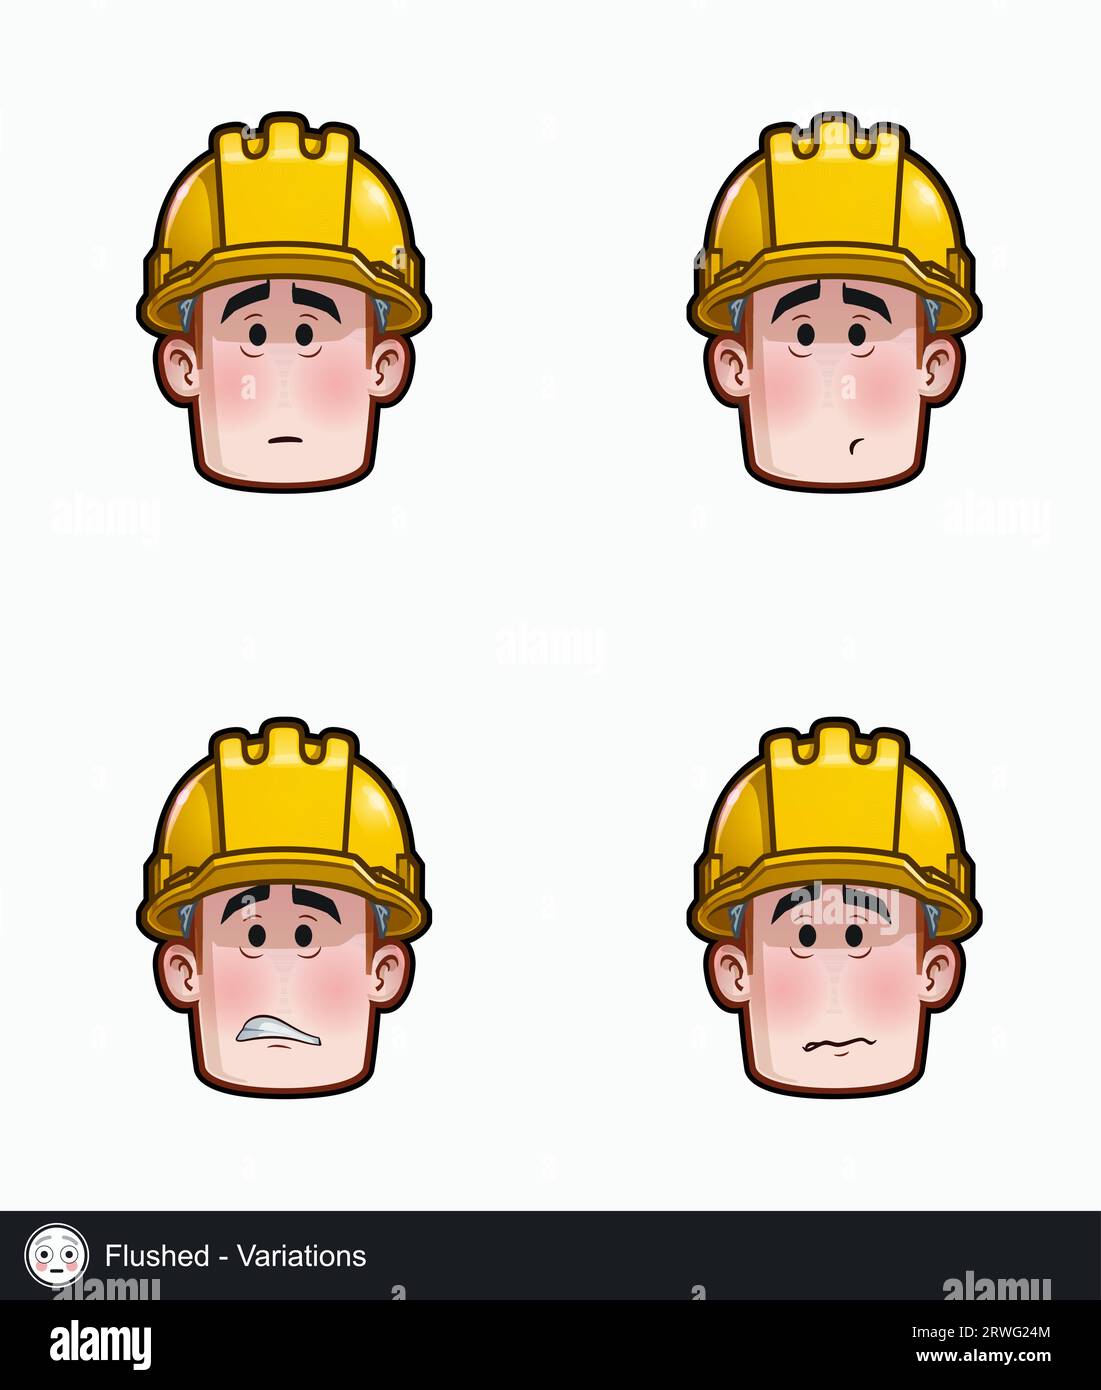 Ensemble d'icônes d'un visage de travailleur de la construction avec des variations d'expression émotionnelle flush. Tous les éléments proprement sur des couches et des groupes bien décrits. Illustration de Vecteur